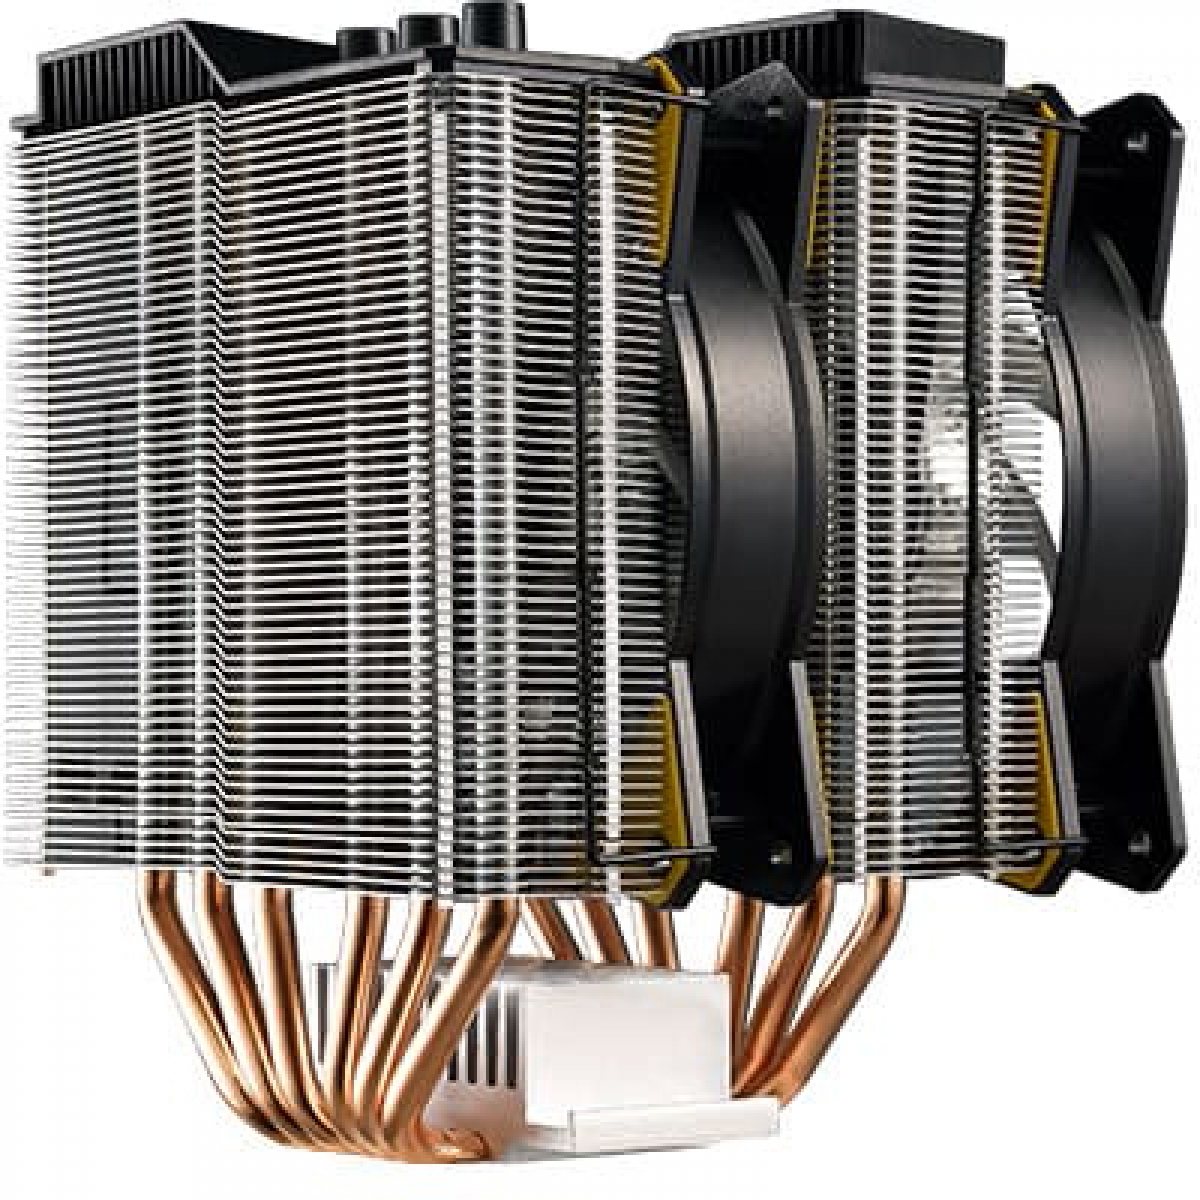 Cooler para Processador Cooler Master MA620P TUF, RGB 120mm, Intel-AMD, MAP-D6PN-AFNPC-R1